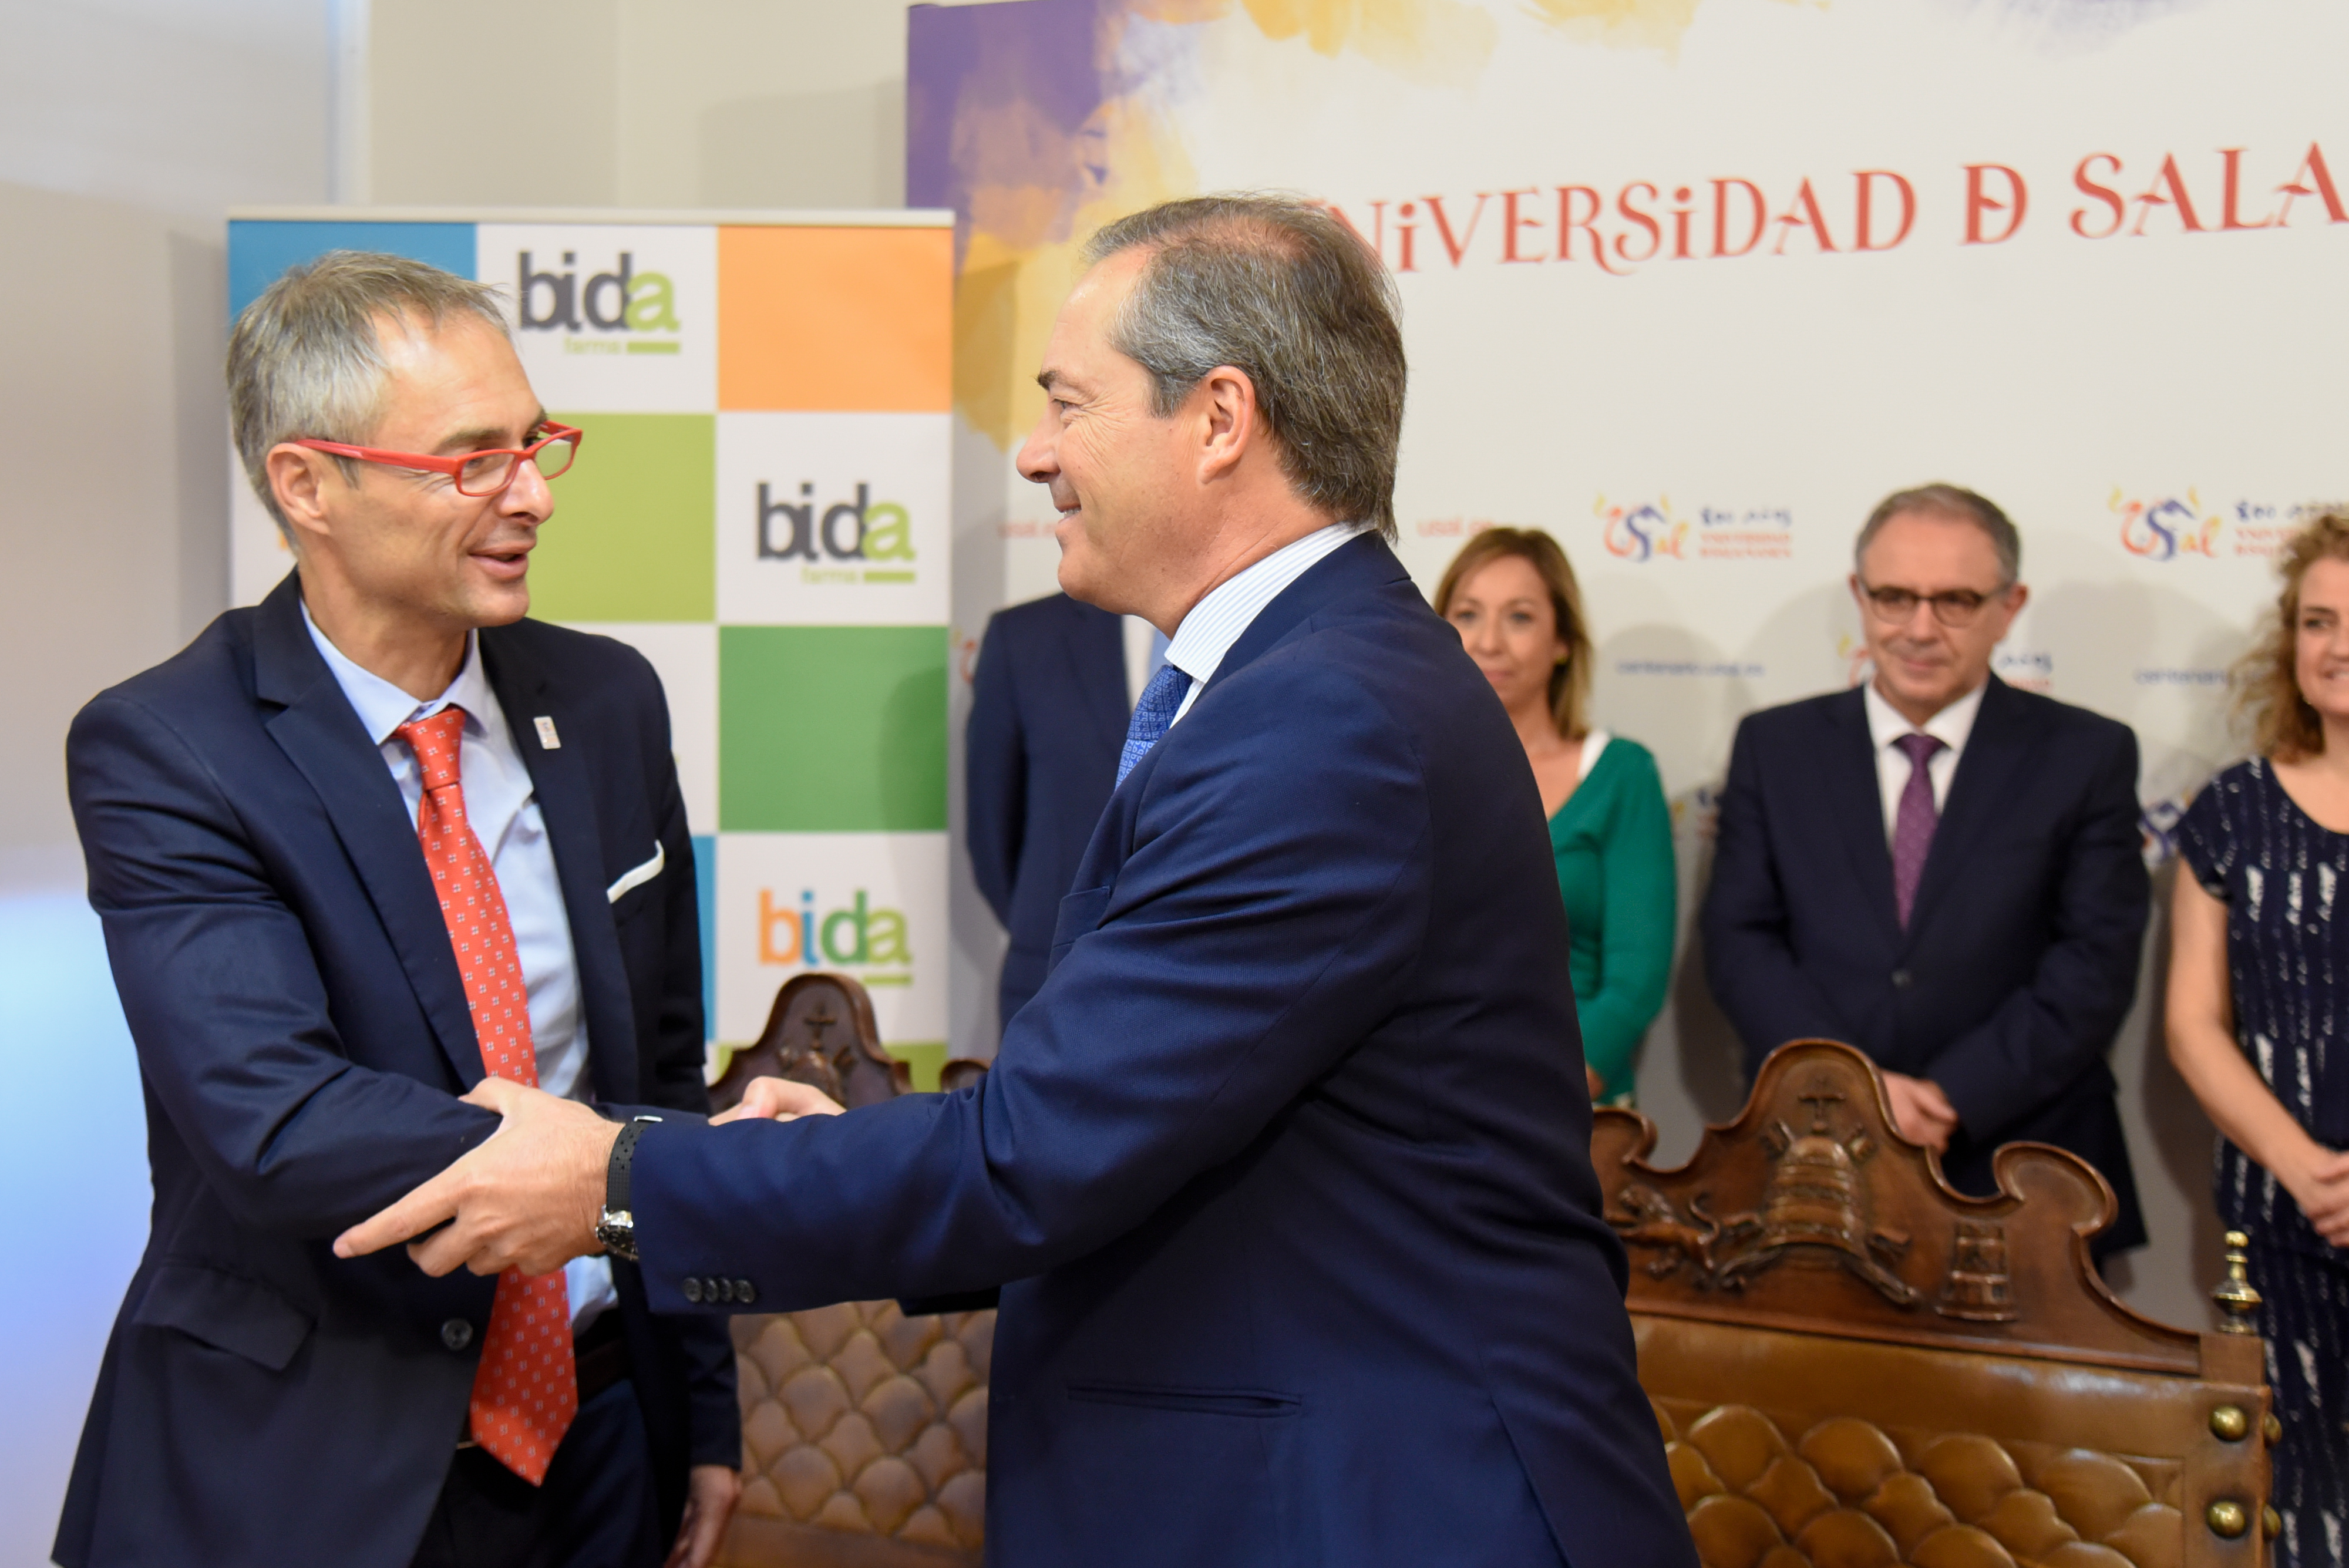 La Universidad de Salamanca y Bidafarma impulsarán la realización de actividades culturales, educativas, editoriales y científicas